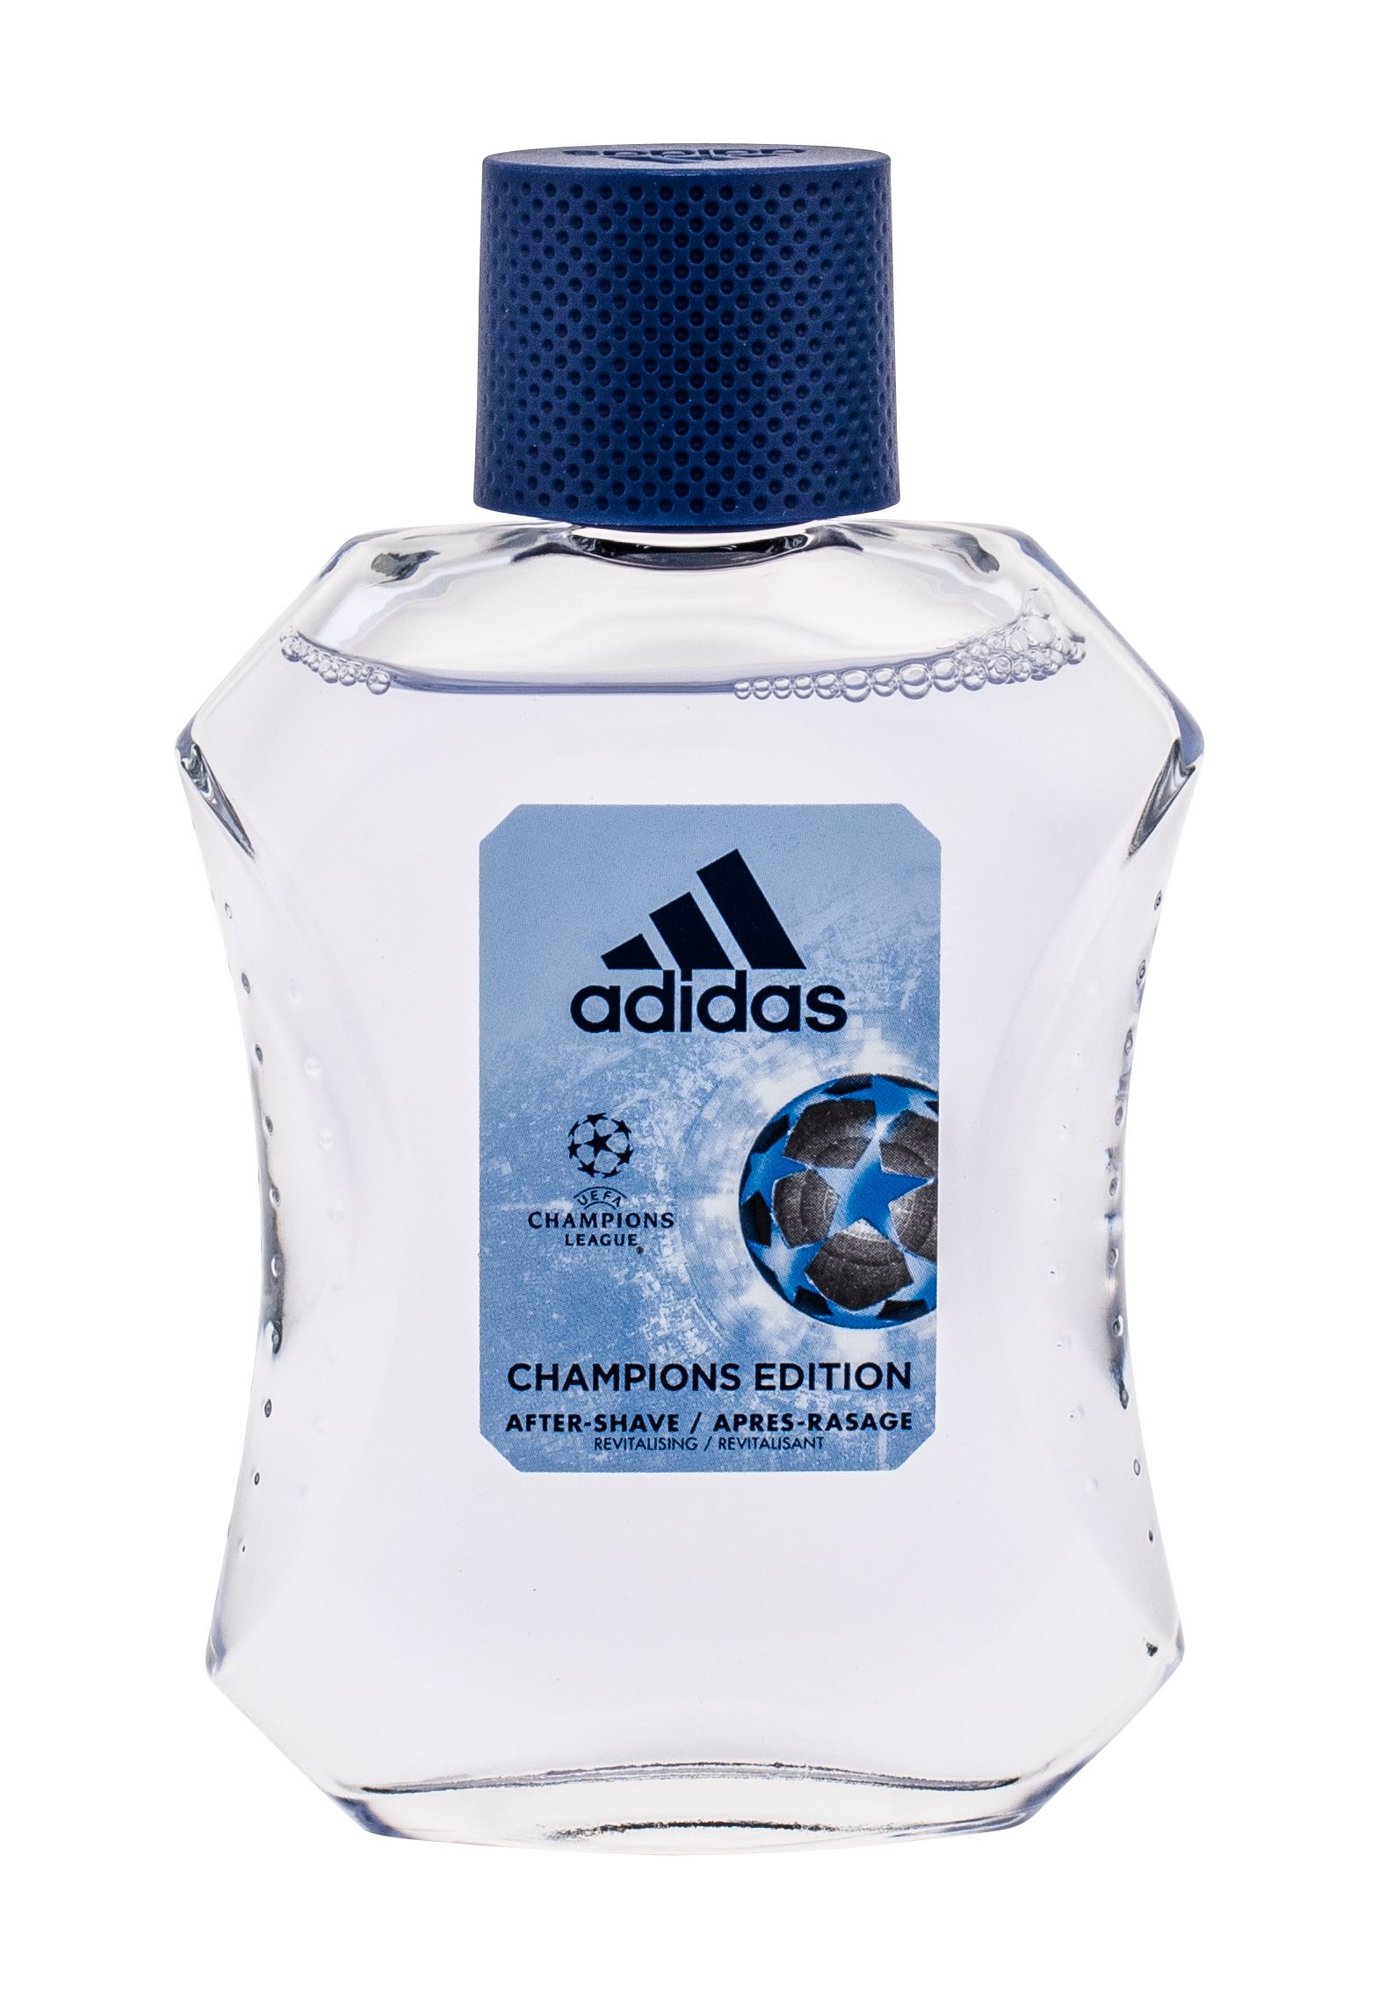 Adidas UEFA Champions League Champions Edition 100ml vanduo po skutimosi (Pažeista pakuotė)